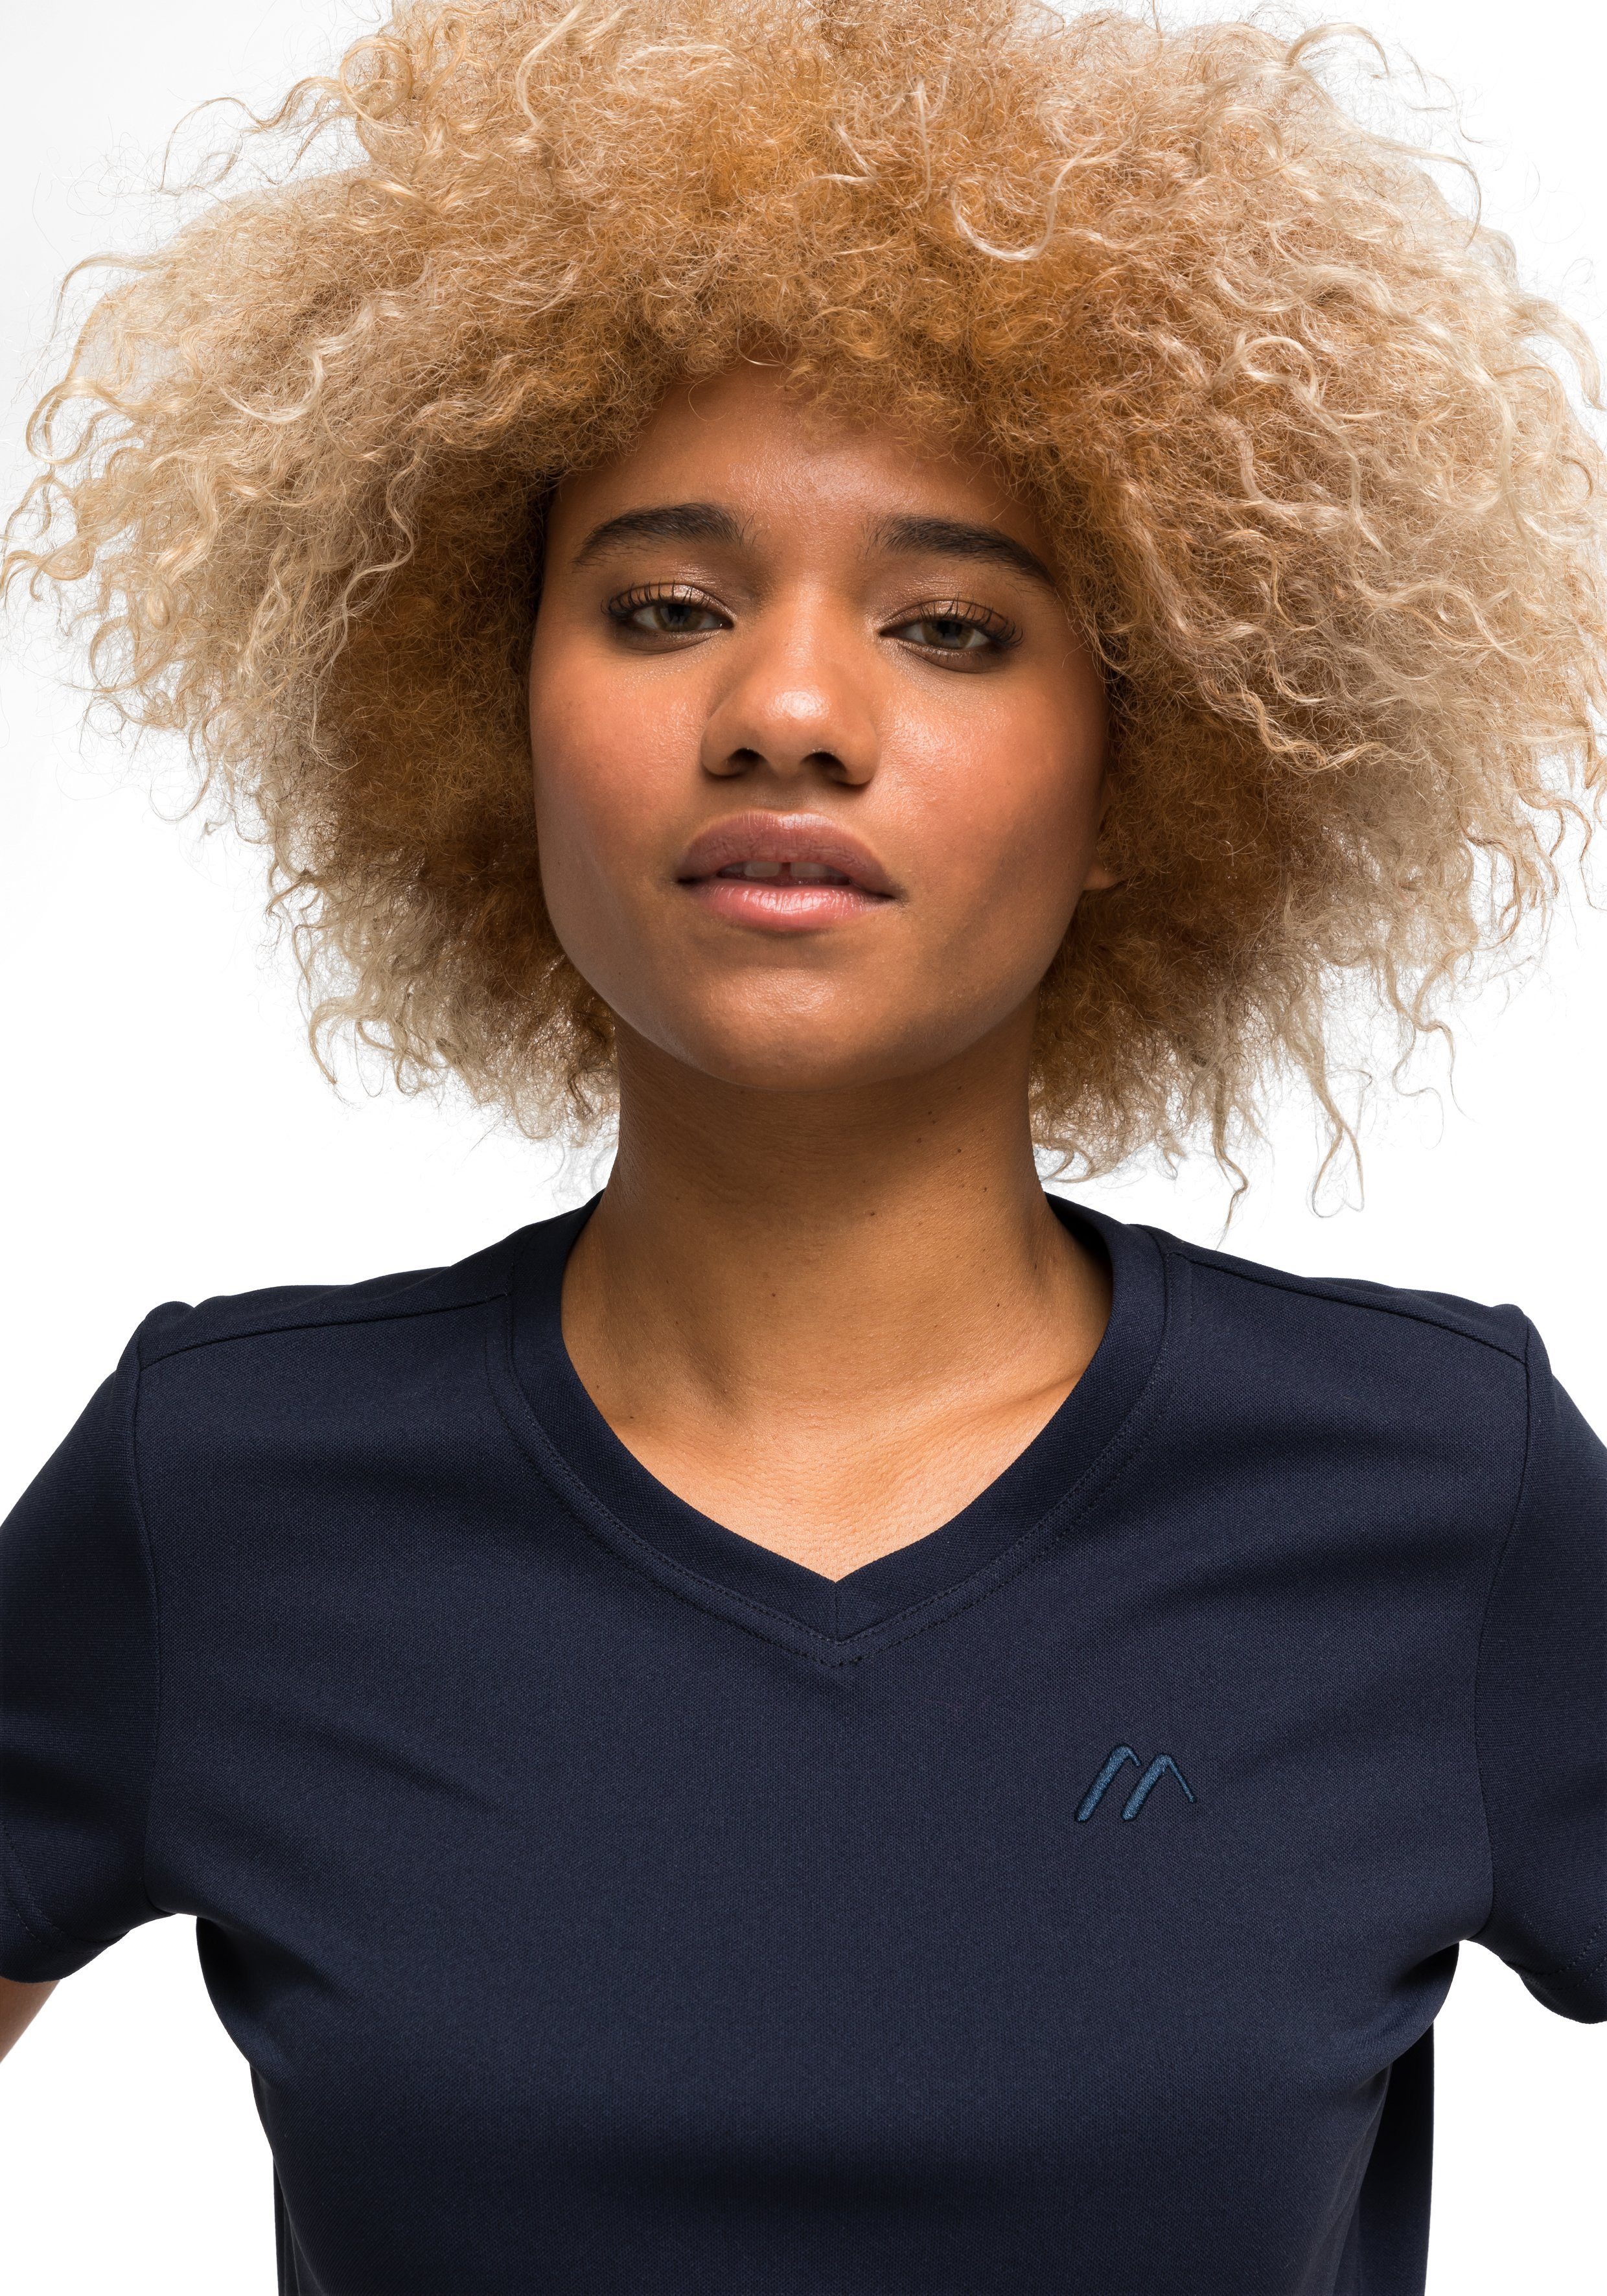 Sports und Trudy Wandern Funktionsshirt dunkelblau Maier T-Shirt, Freizeit Kurzarmshirt Damen für